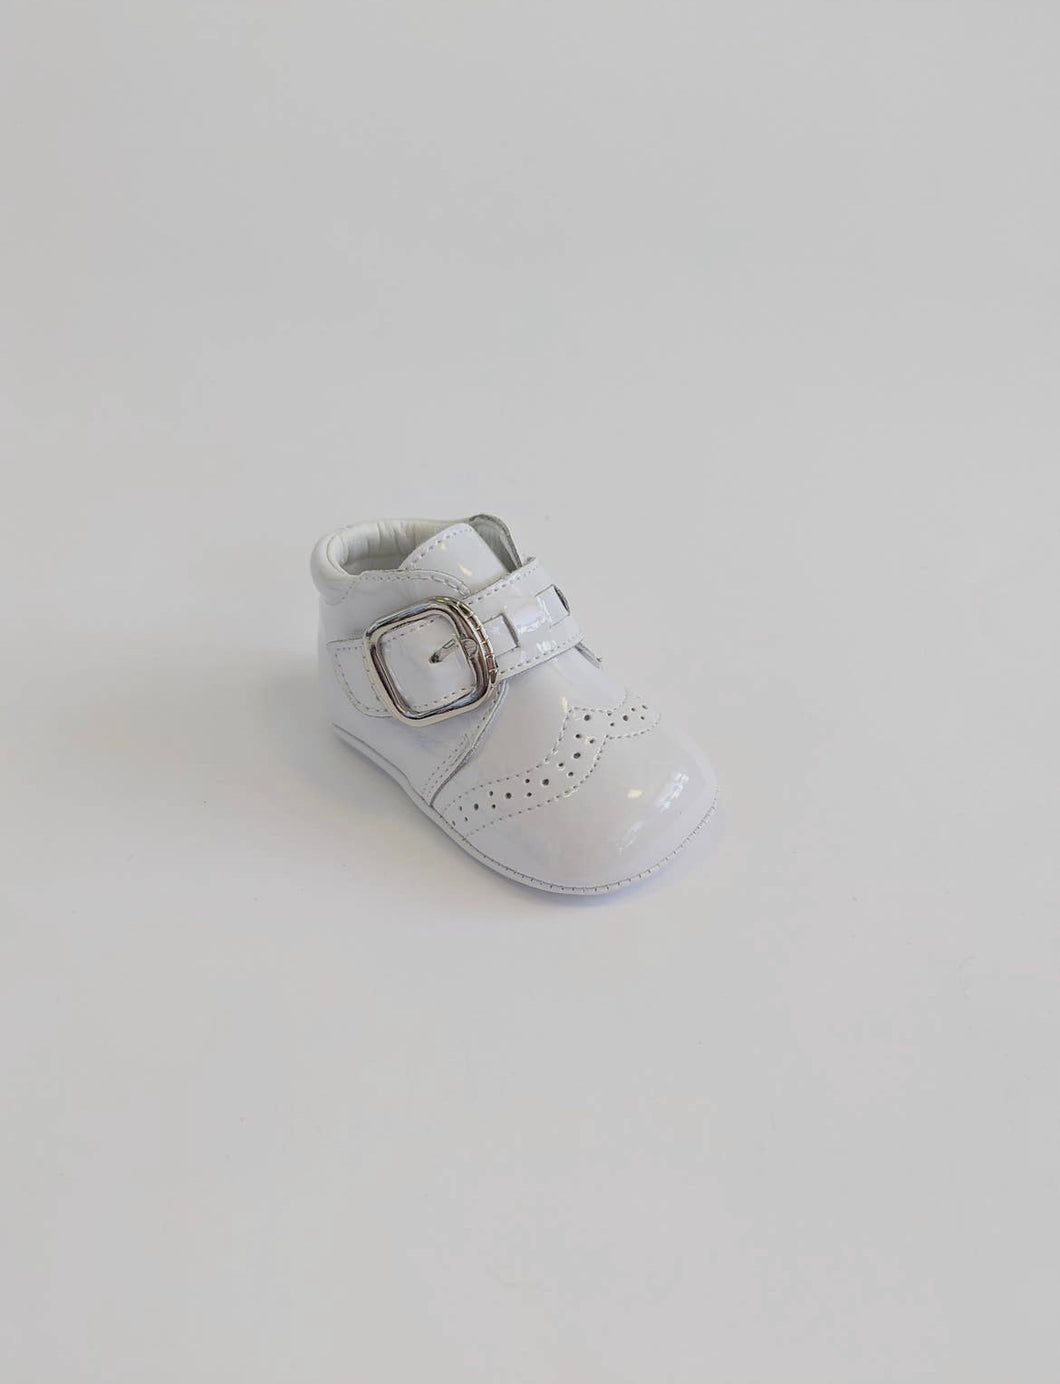 Jackson baby boys crib shoes